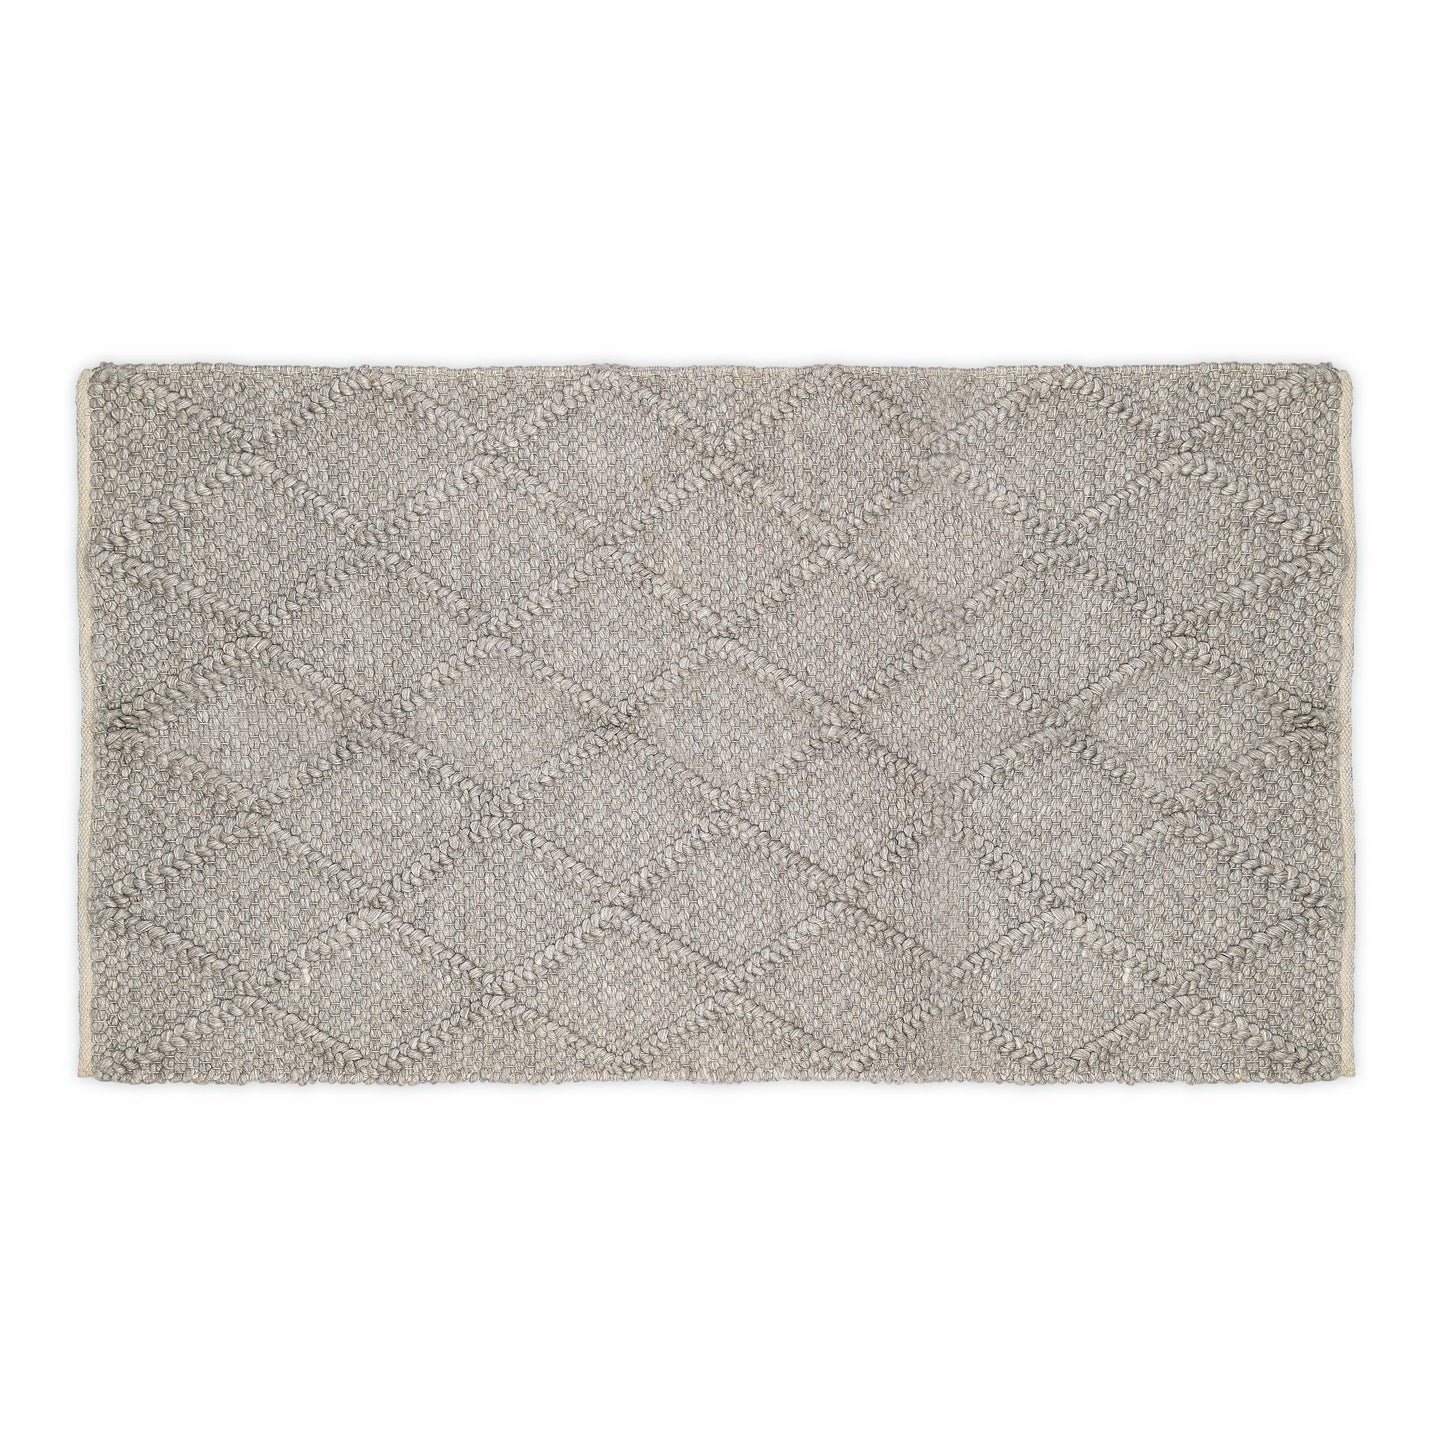 Hand Woven Wool Area Rug Footmat Doormat Woven Brown Long Ha